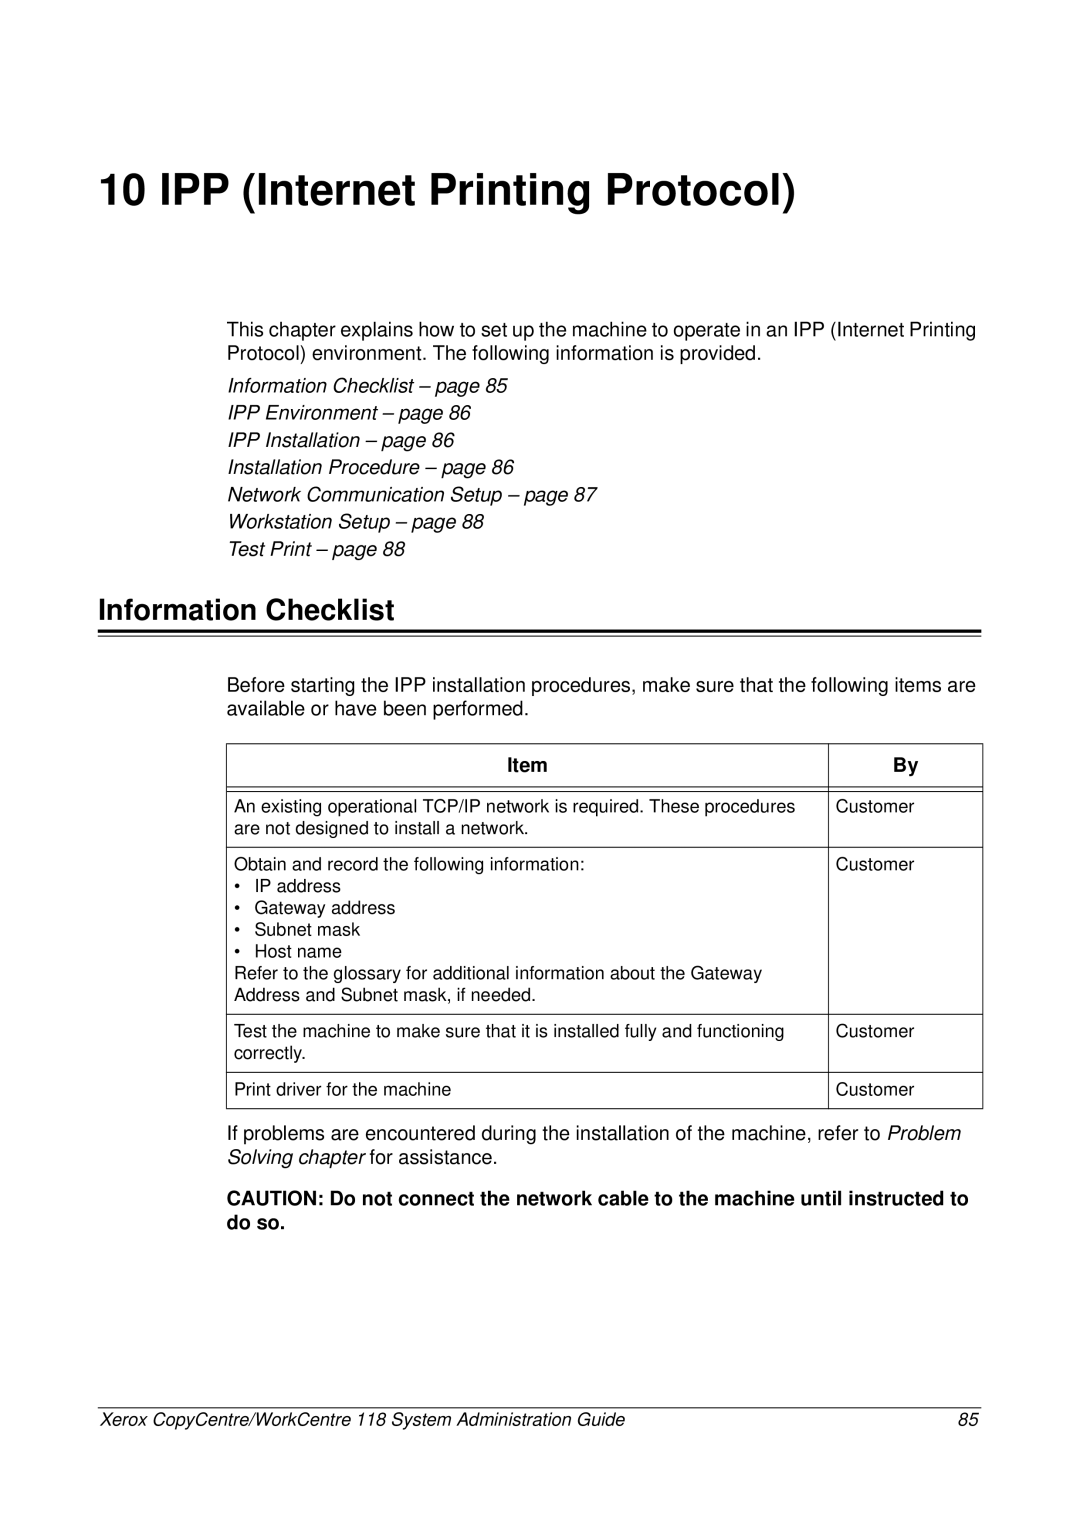 Xerox 701P42722_EN manual IPP Internet Printing Protocol, Information Checklist 